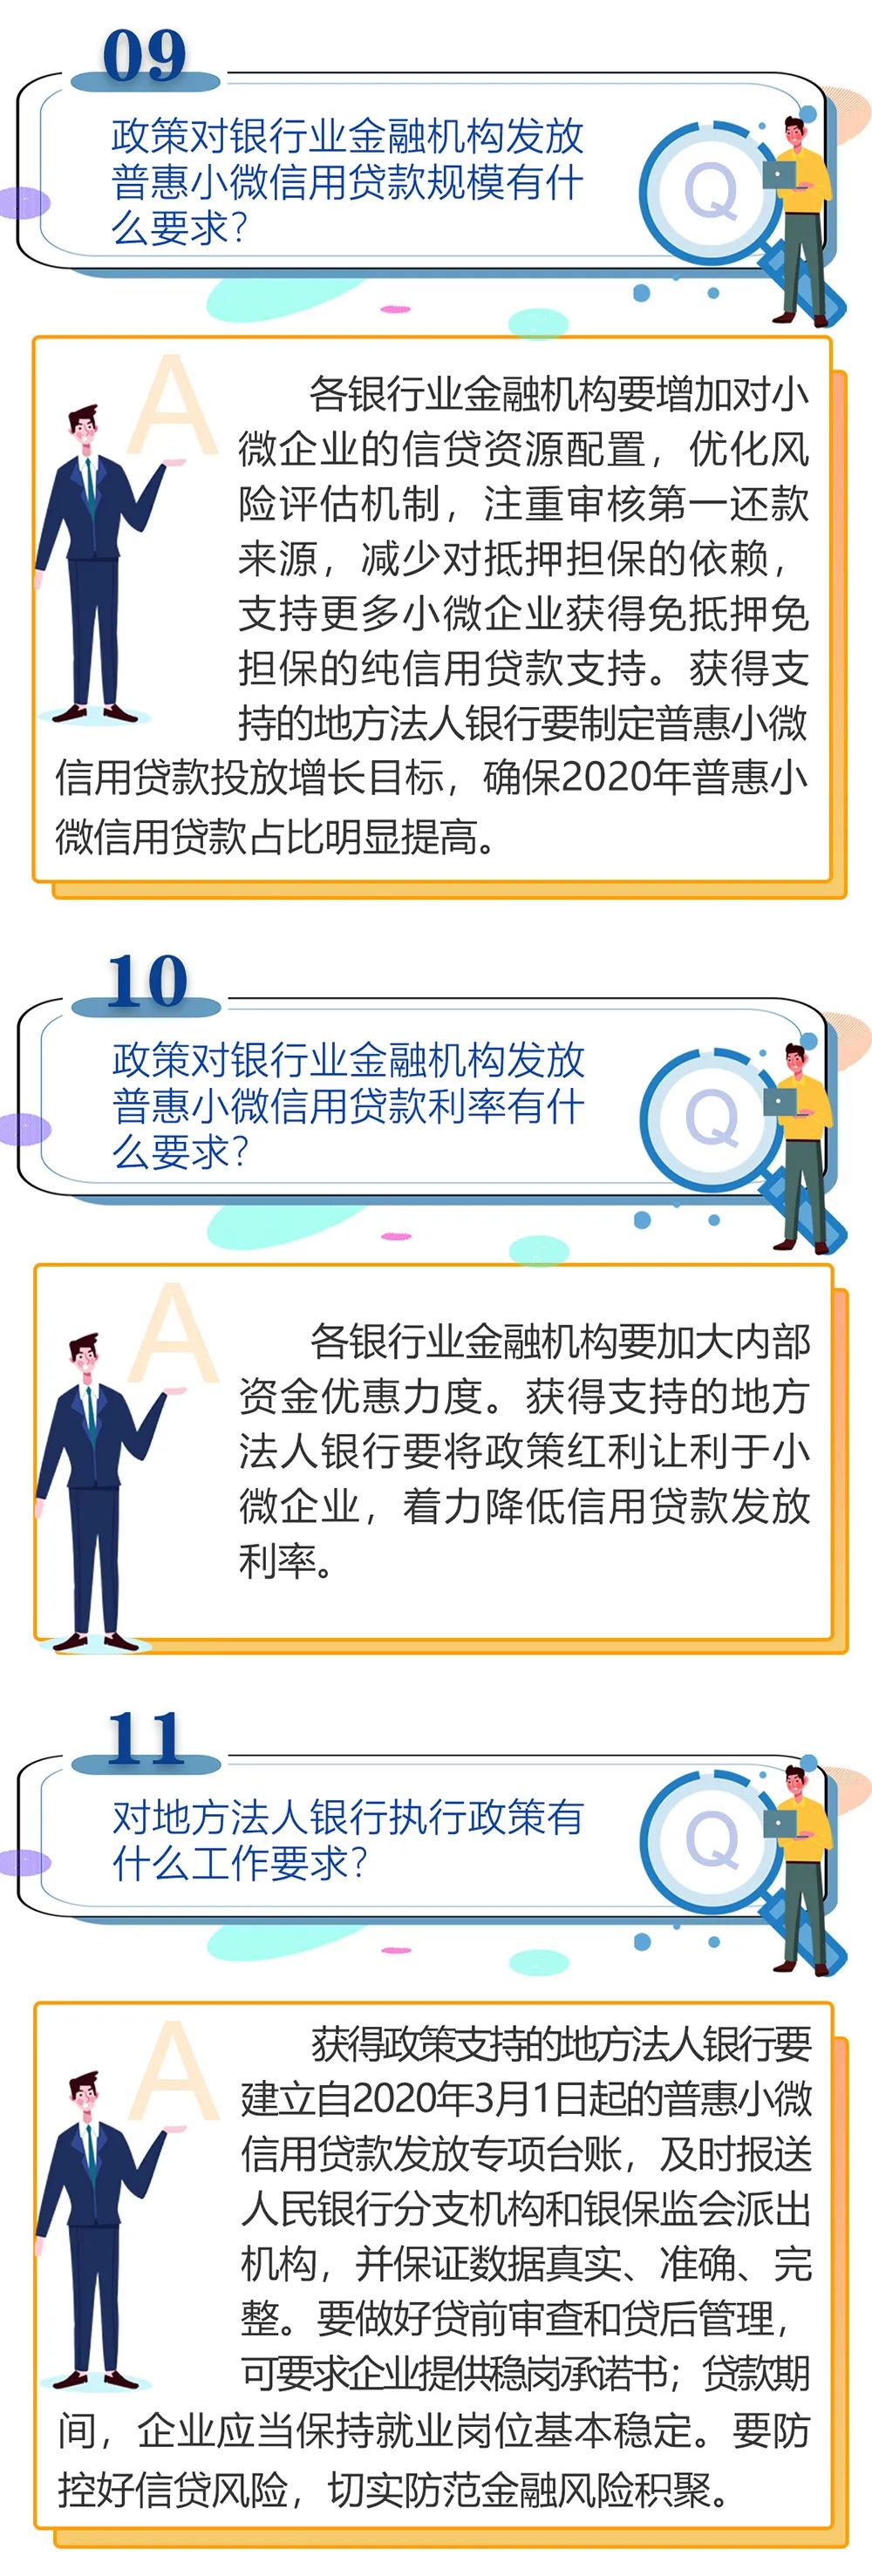 【政策指南】普惠小微信用贷款支持政策问答(图3)